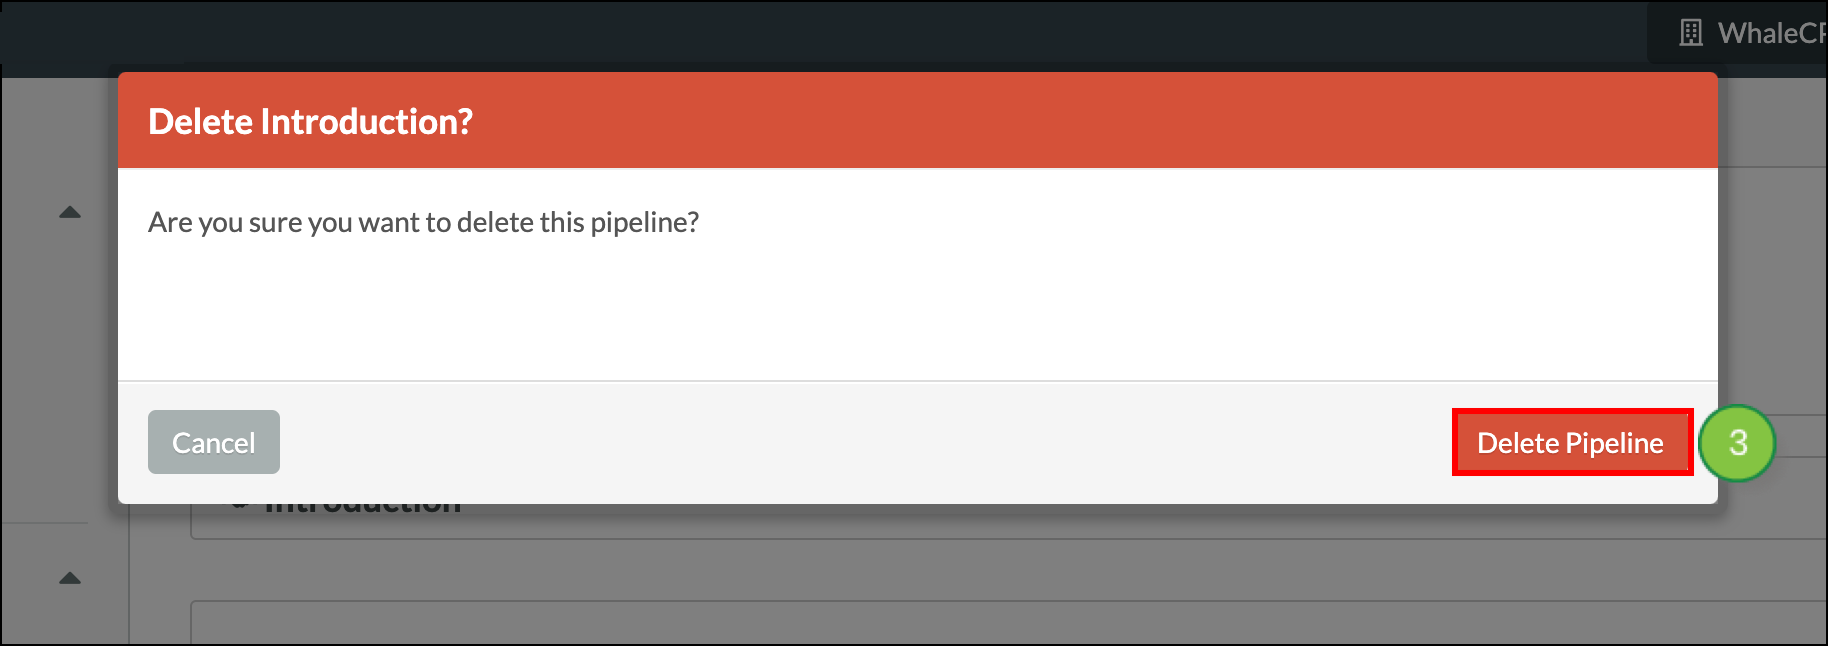 Clikc Delete Pipeline in the modal popup window